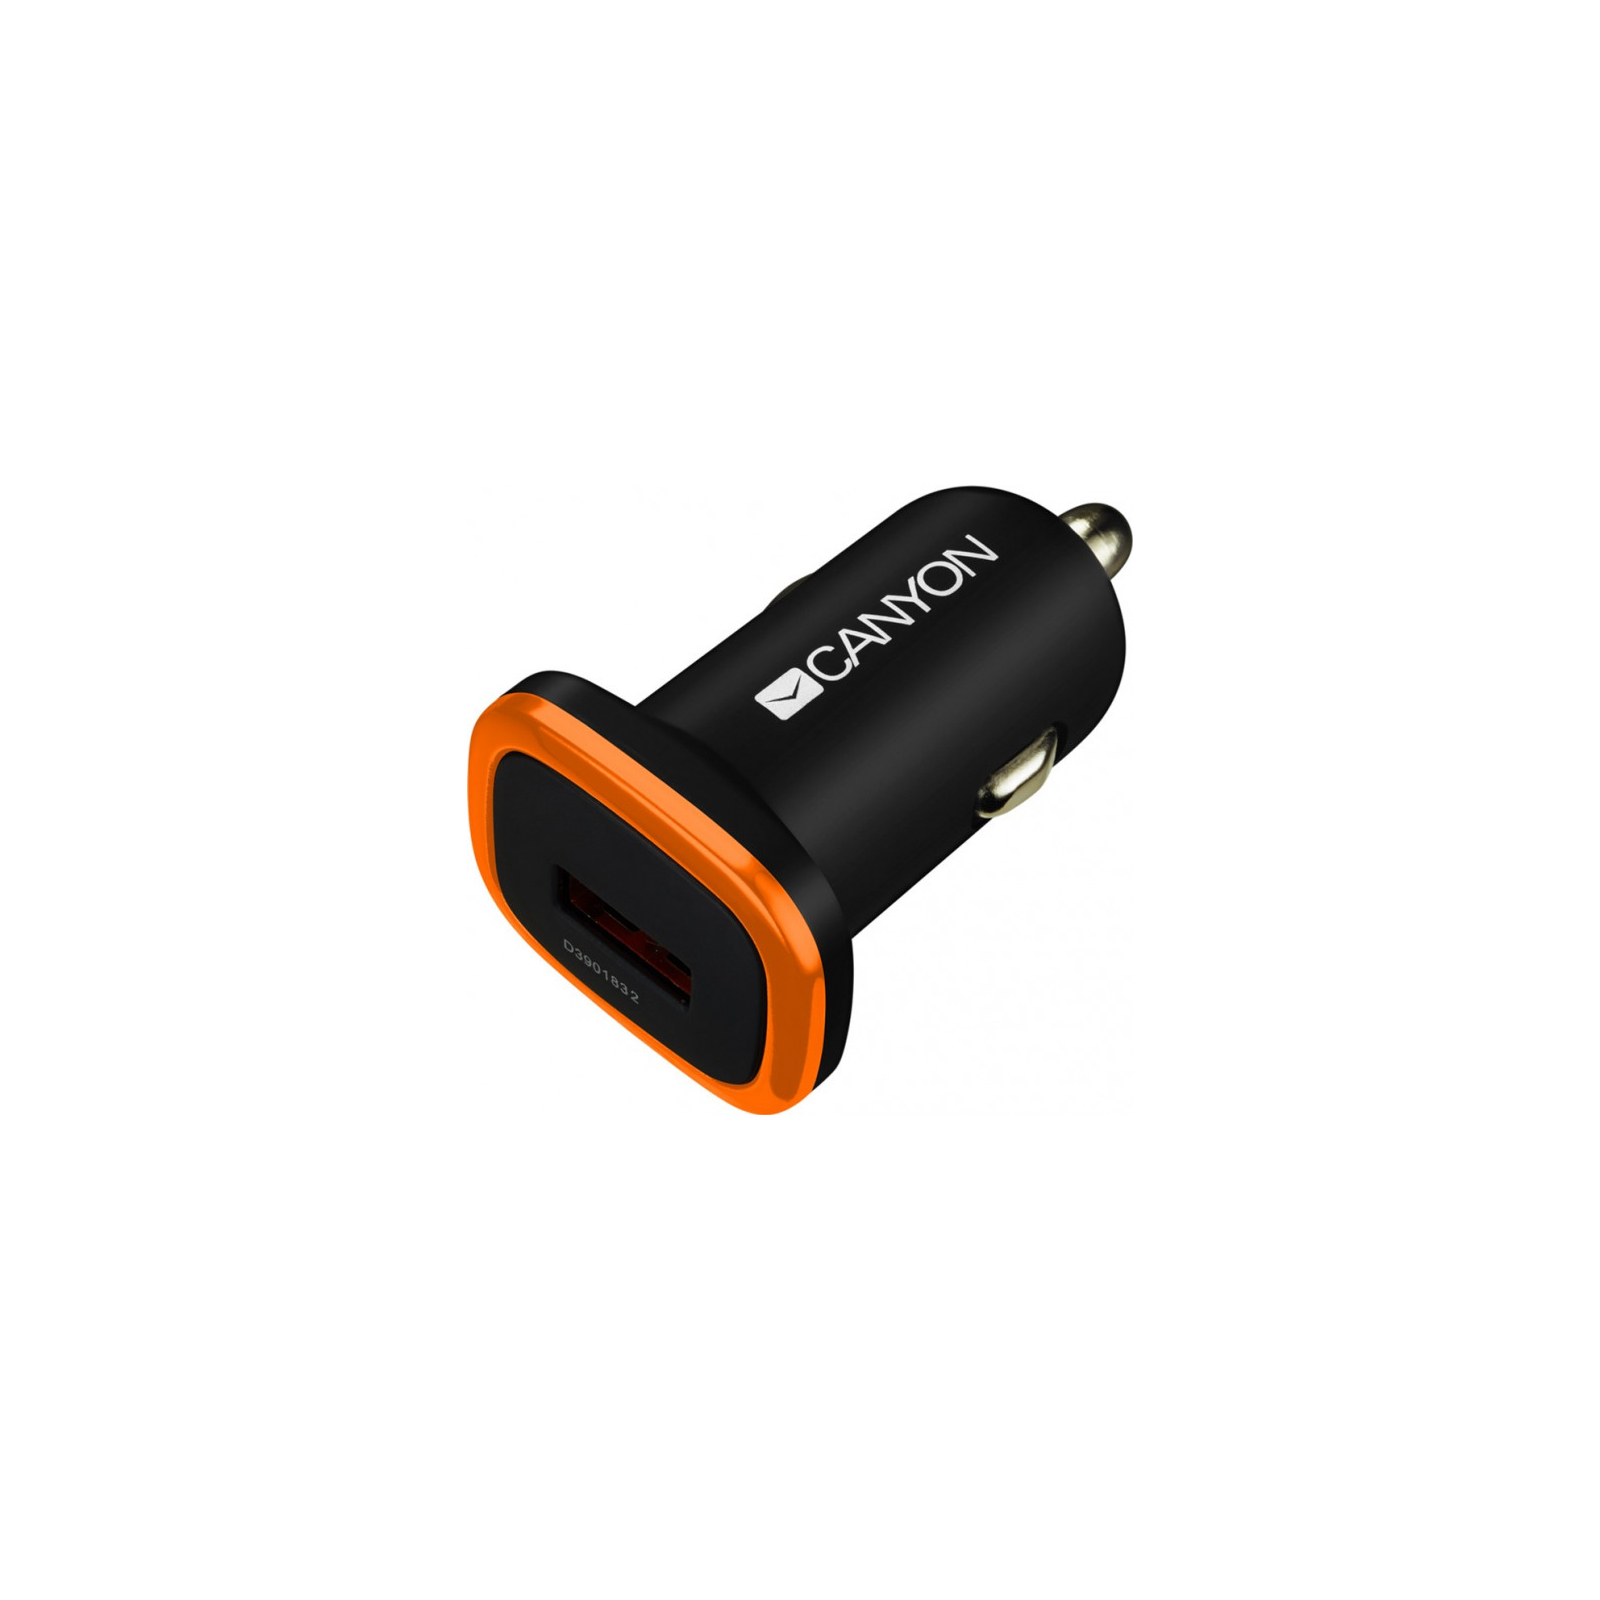 Зарядное устройство Canyon Universal 1xUSB car adapter (CNE-CCA01B)